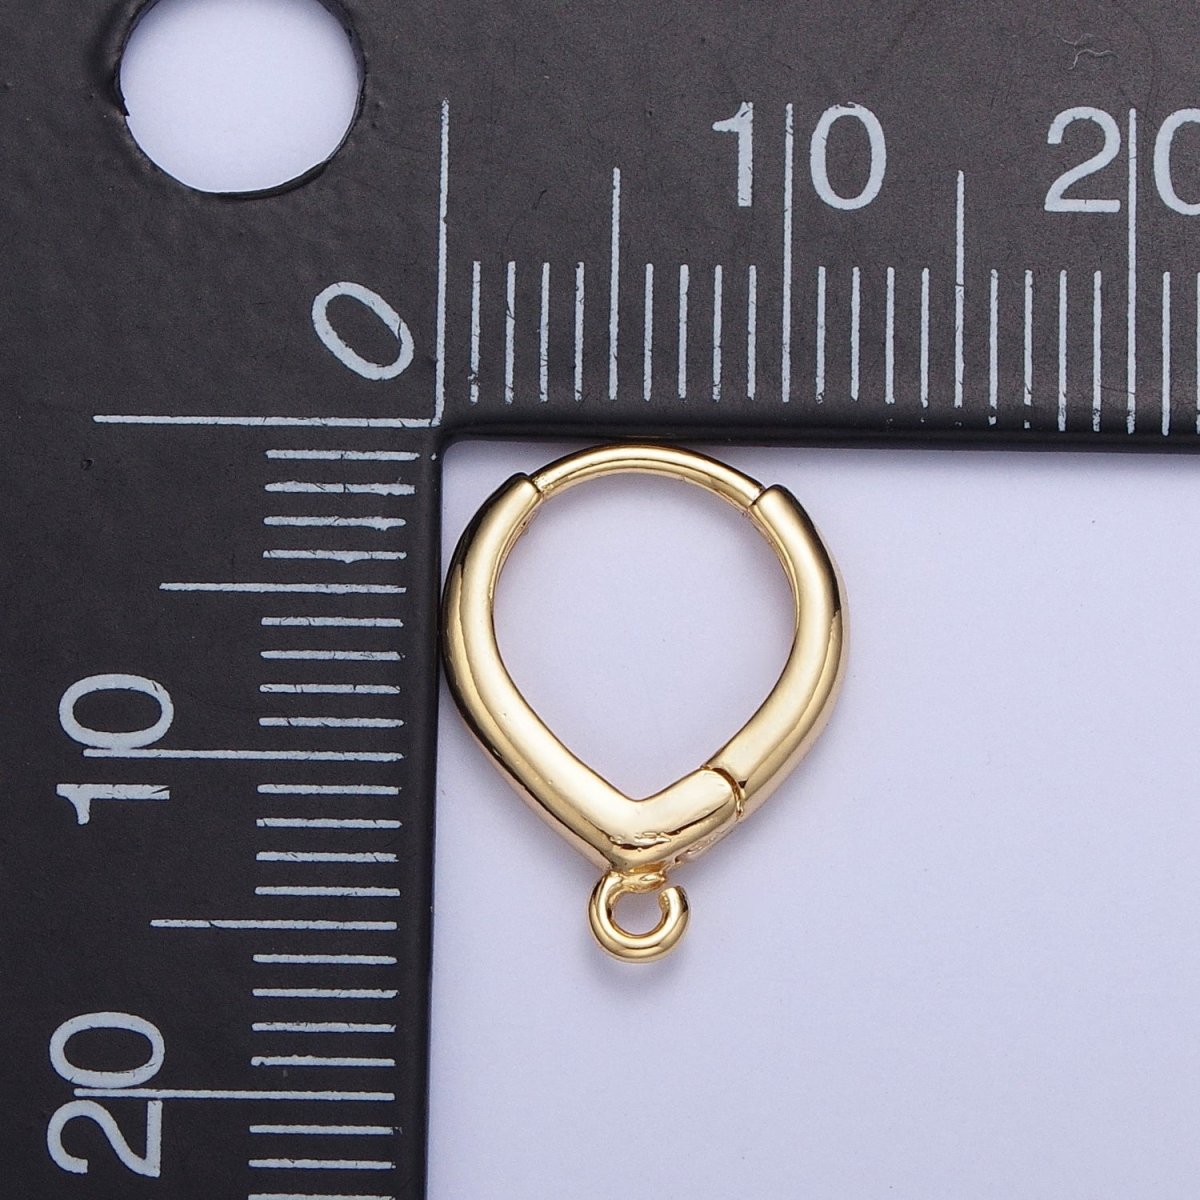 Teardrop Huggie Hoops Earrings with Open Link Loop Jewelry Supply Gold / Silver L-814 Z-158 - DLUXCA